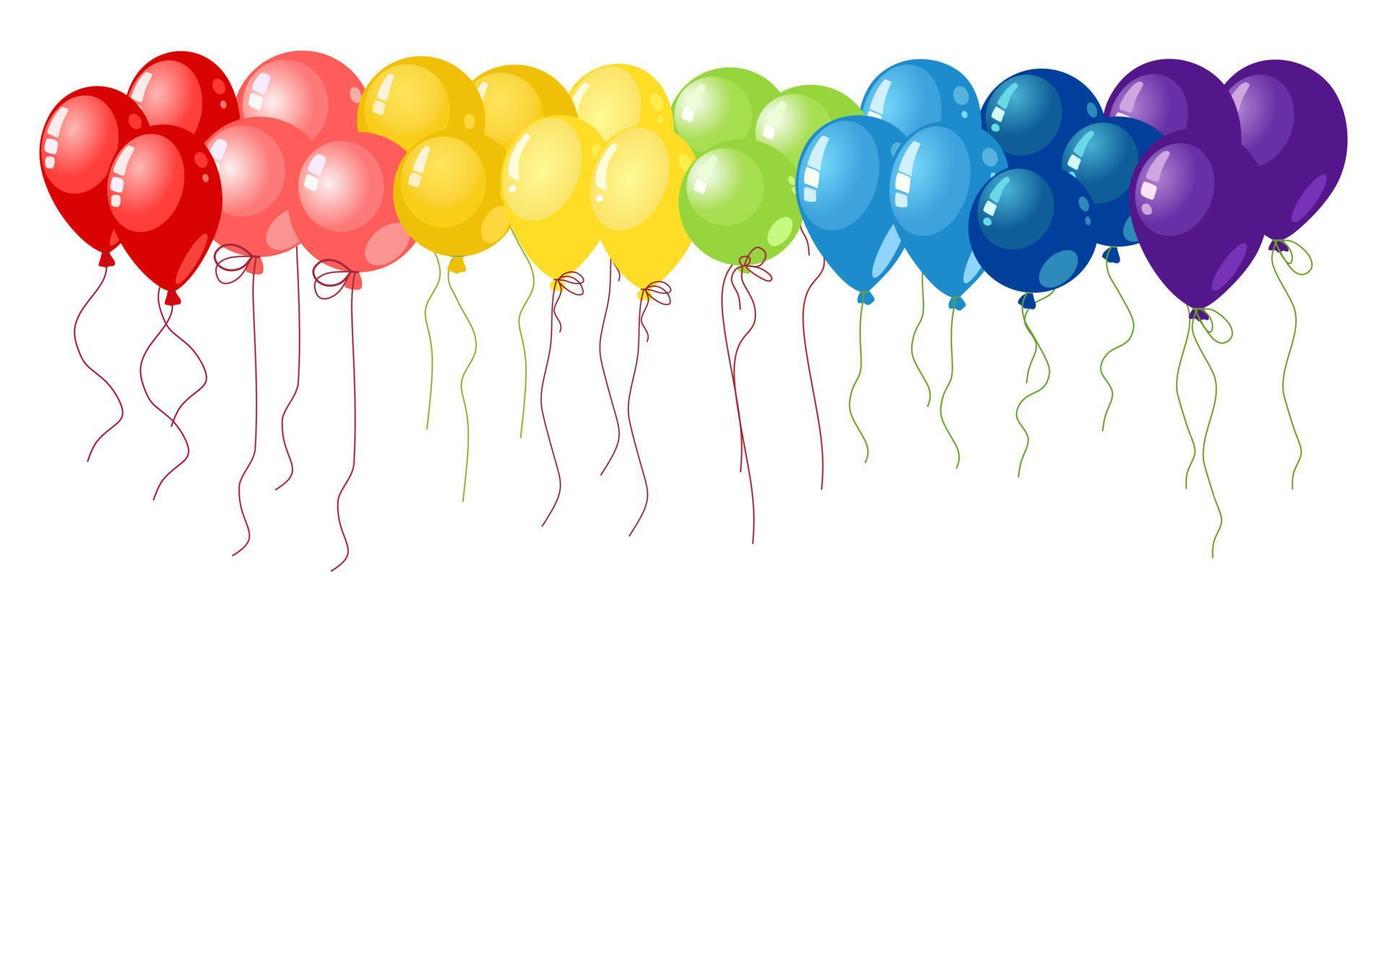 ballons set vector rouge, rose, orange, jaune, vert, bleu et violet sur fond blanc. couleurs arc-en-ciel.